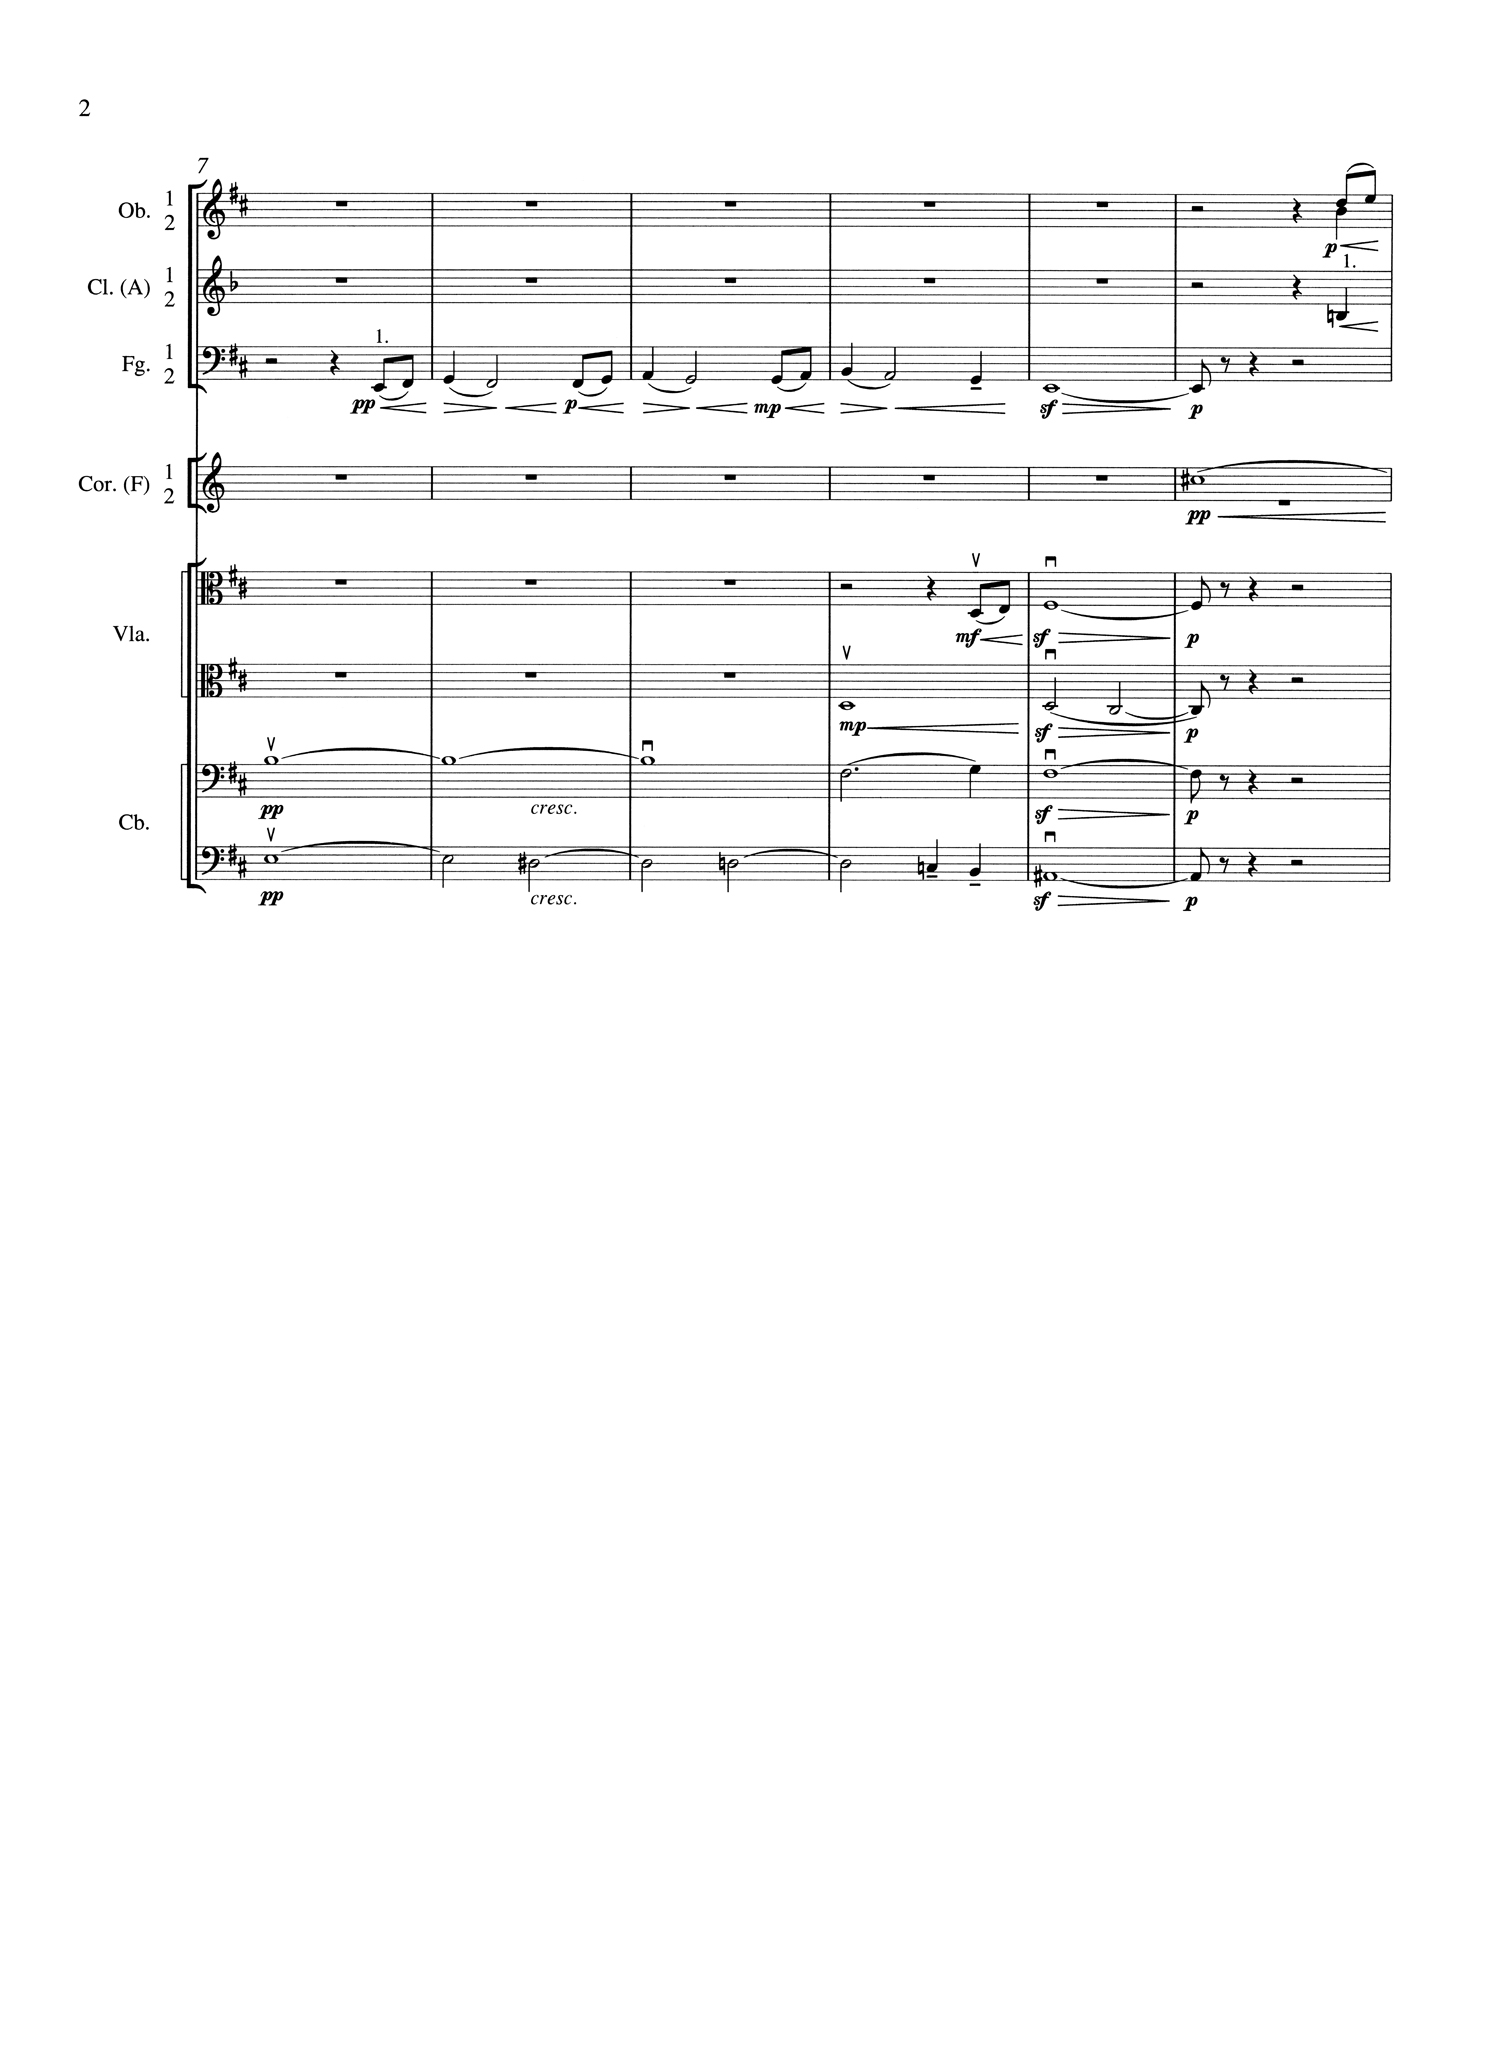 Tchaikovsky 6 Score Page 2.jpg